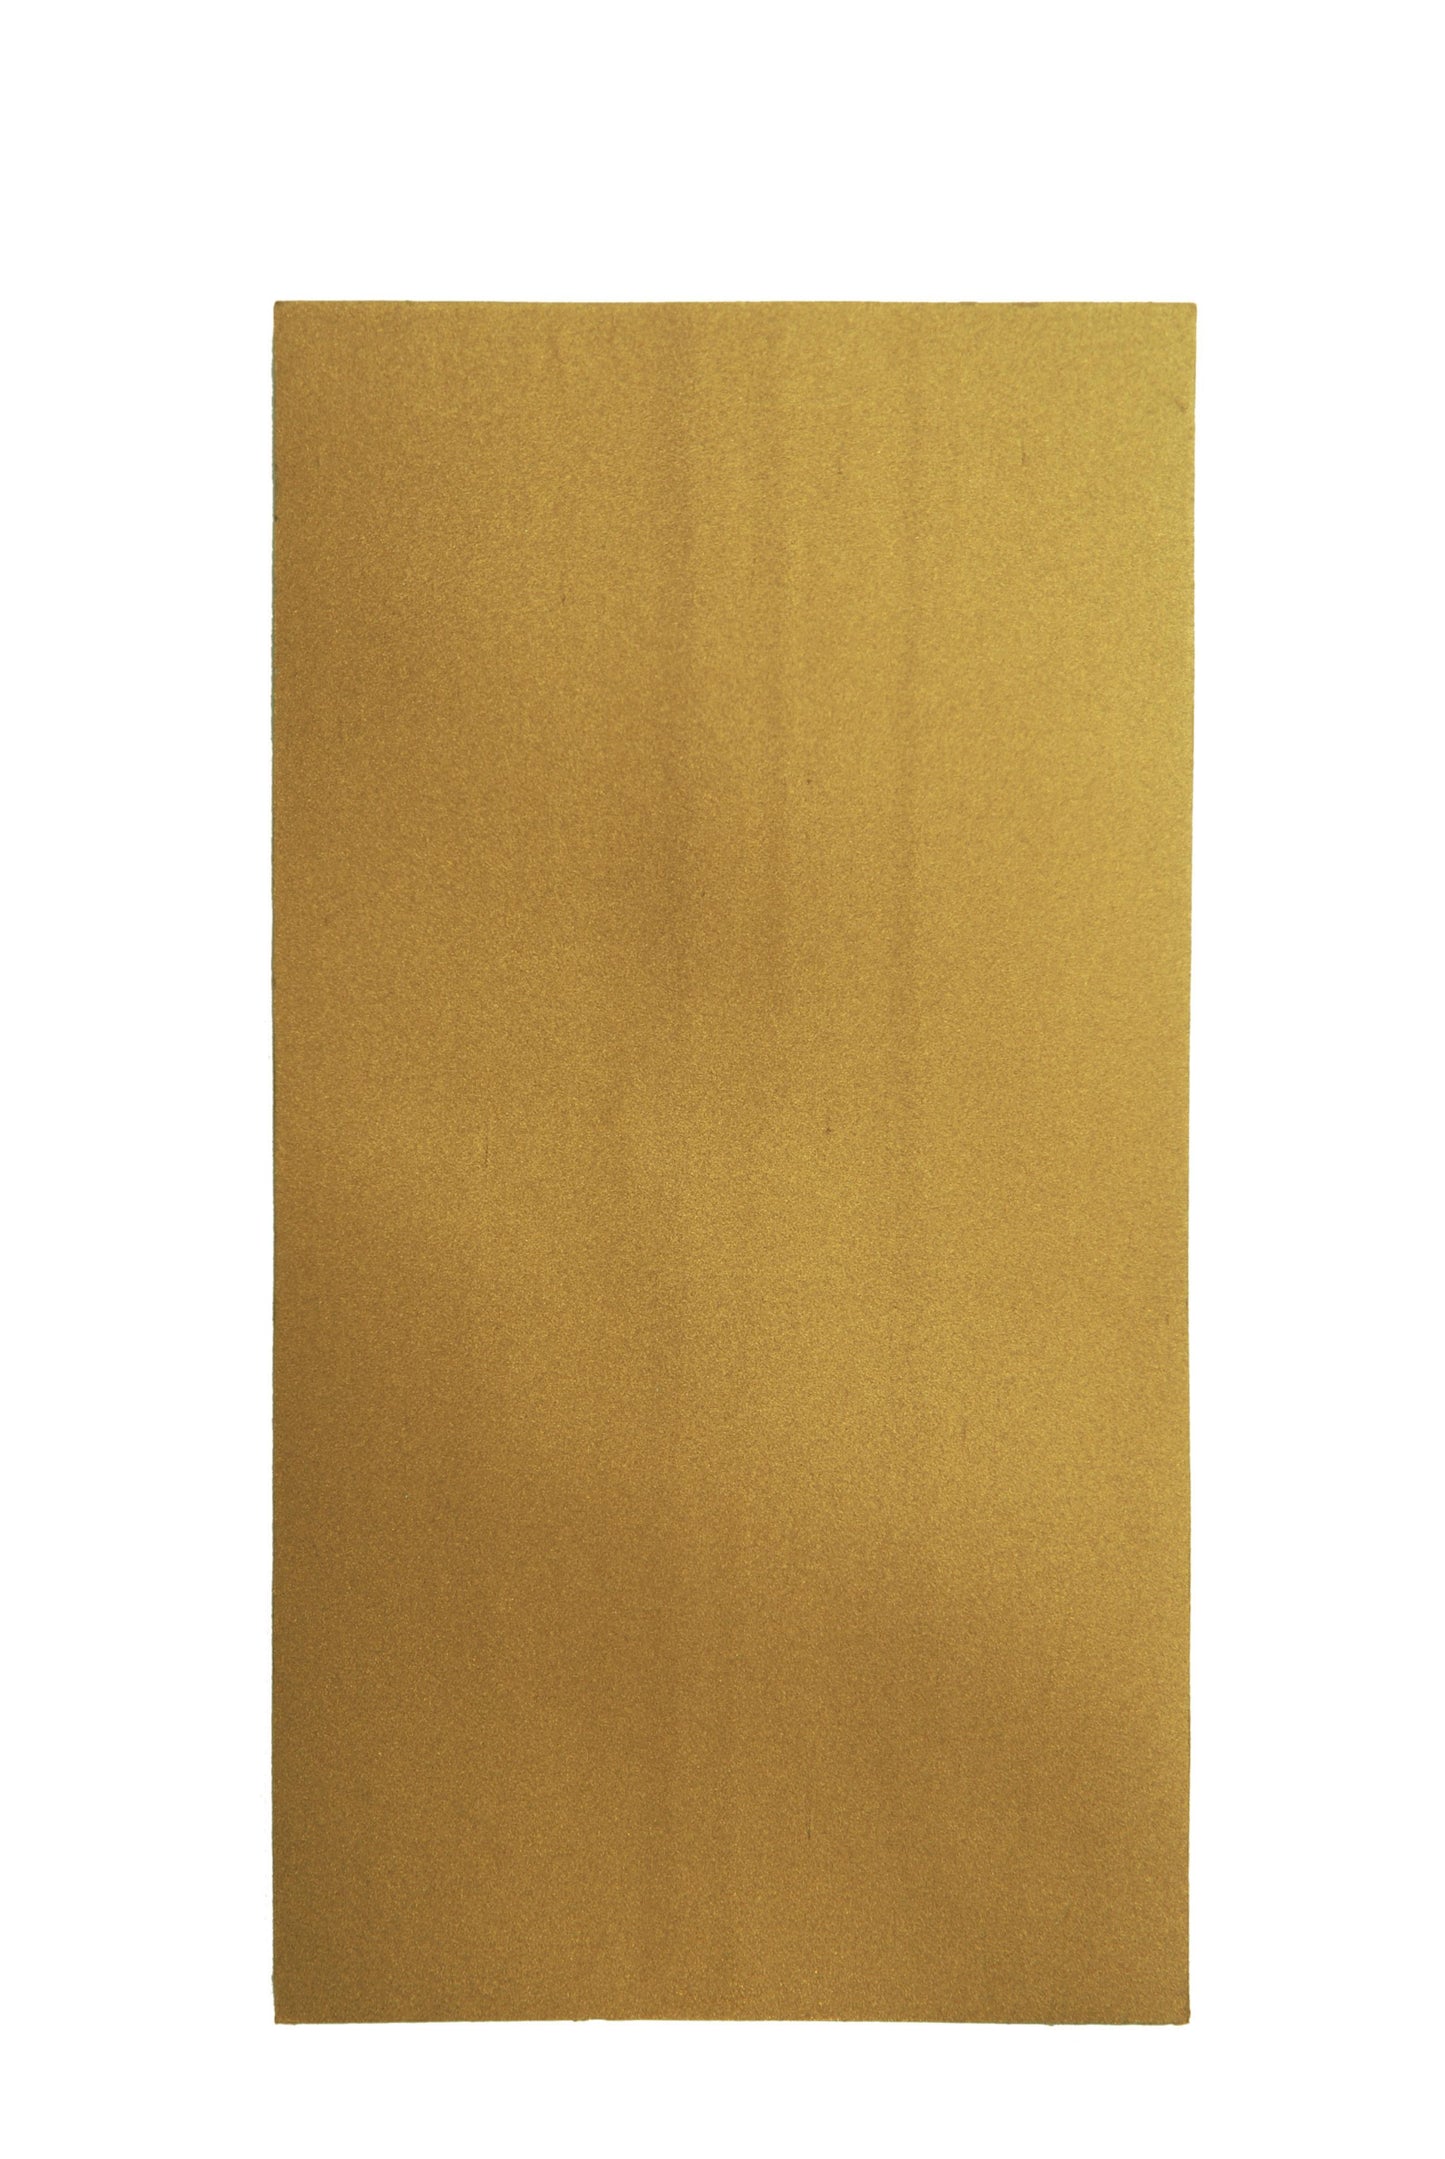 10x Wachsplatten veredelt Kartonware 200/100mm (Altgold)